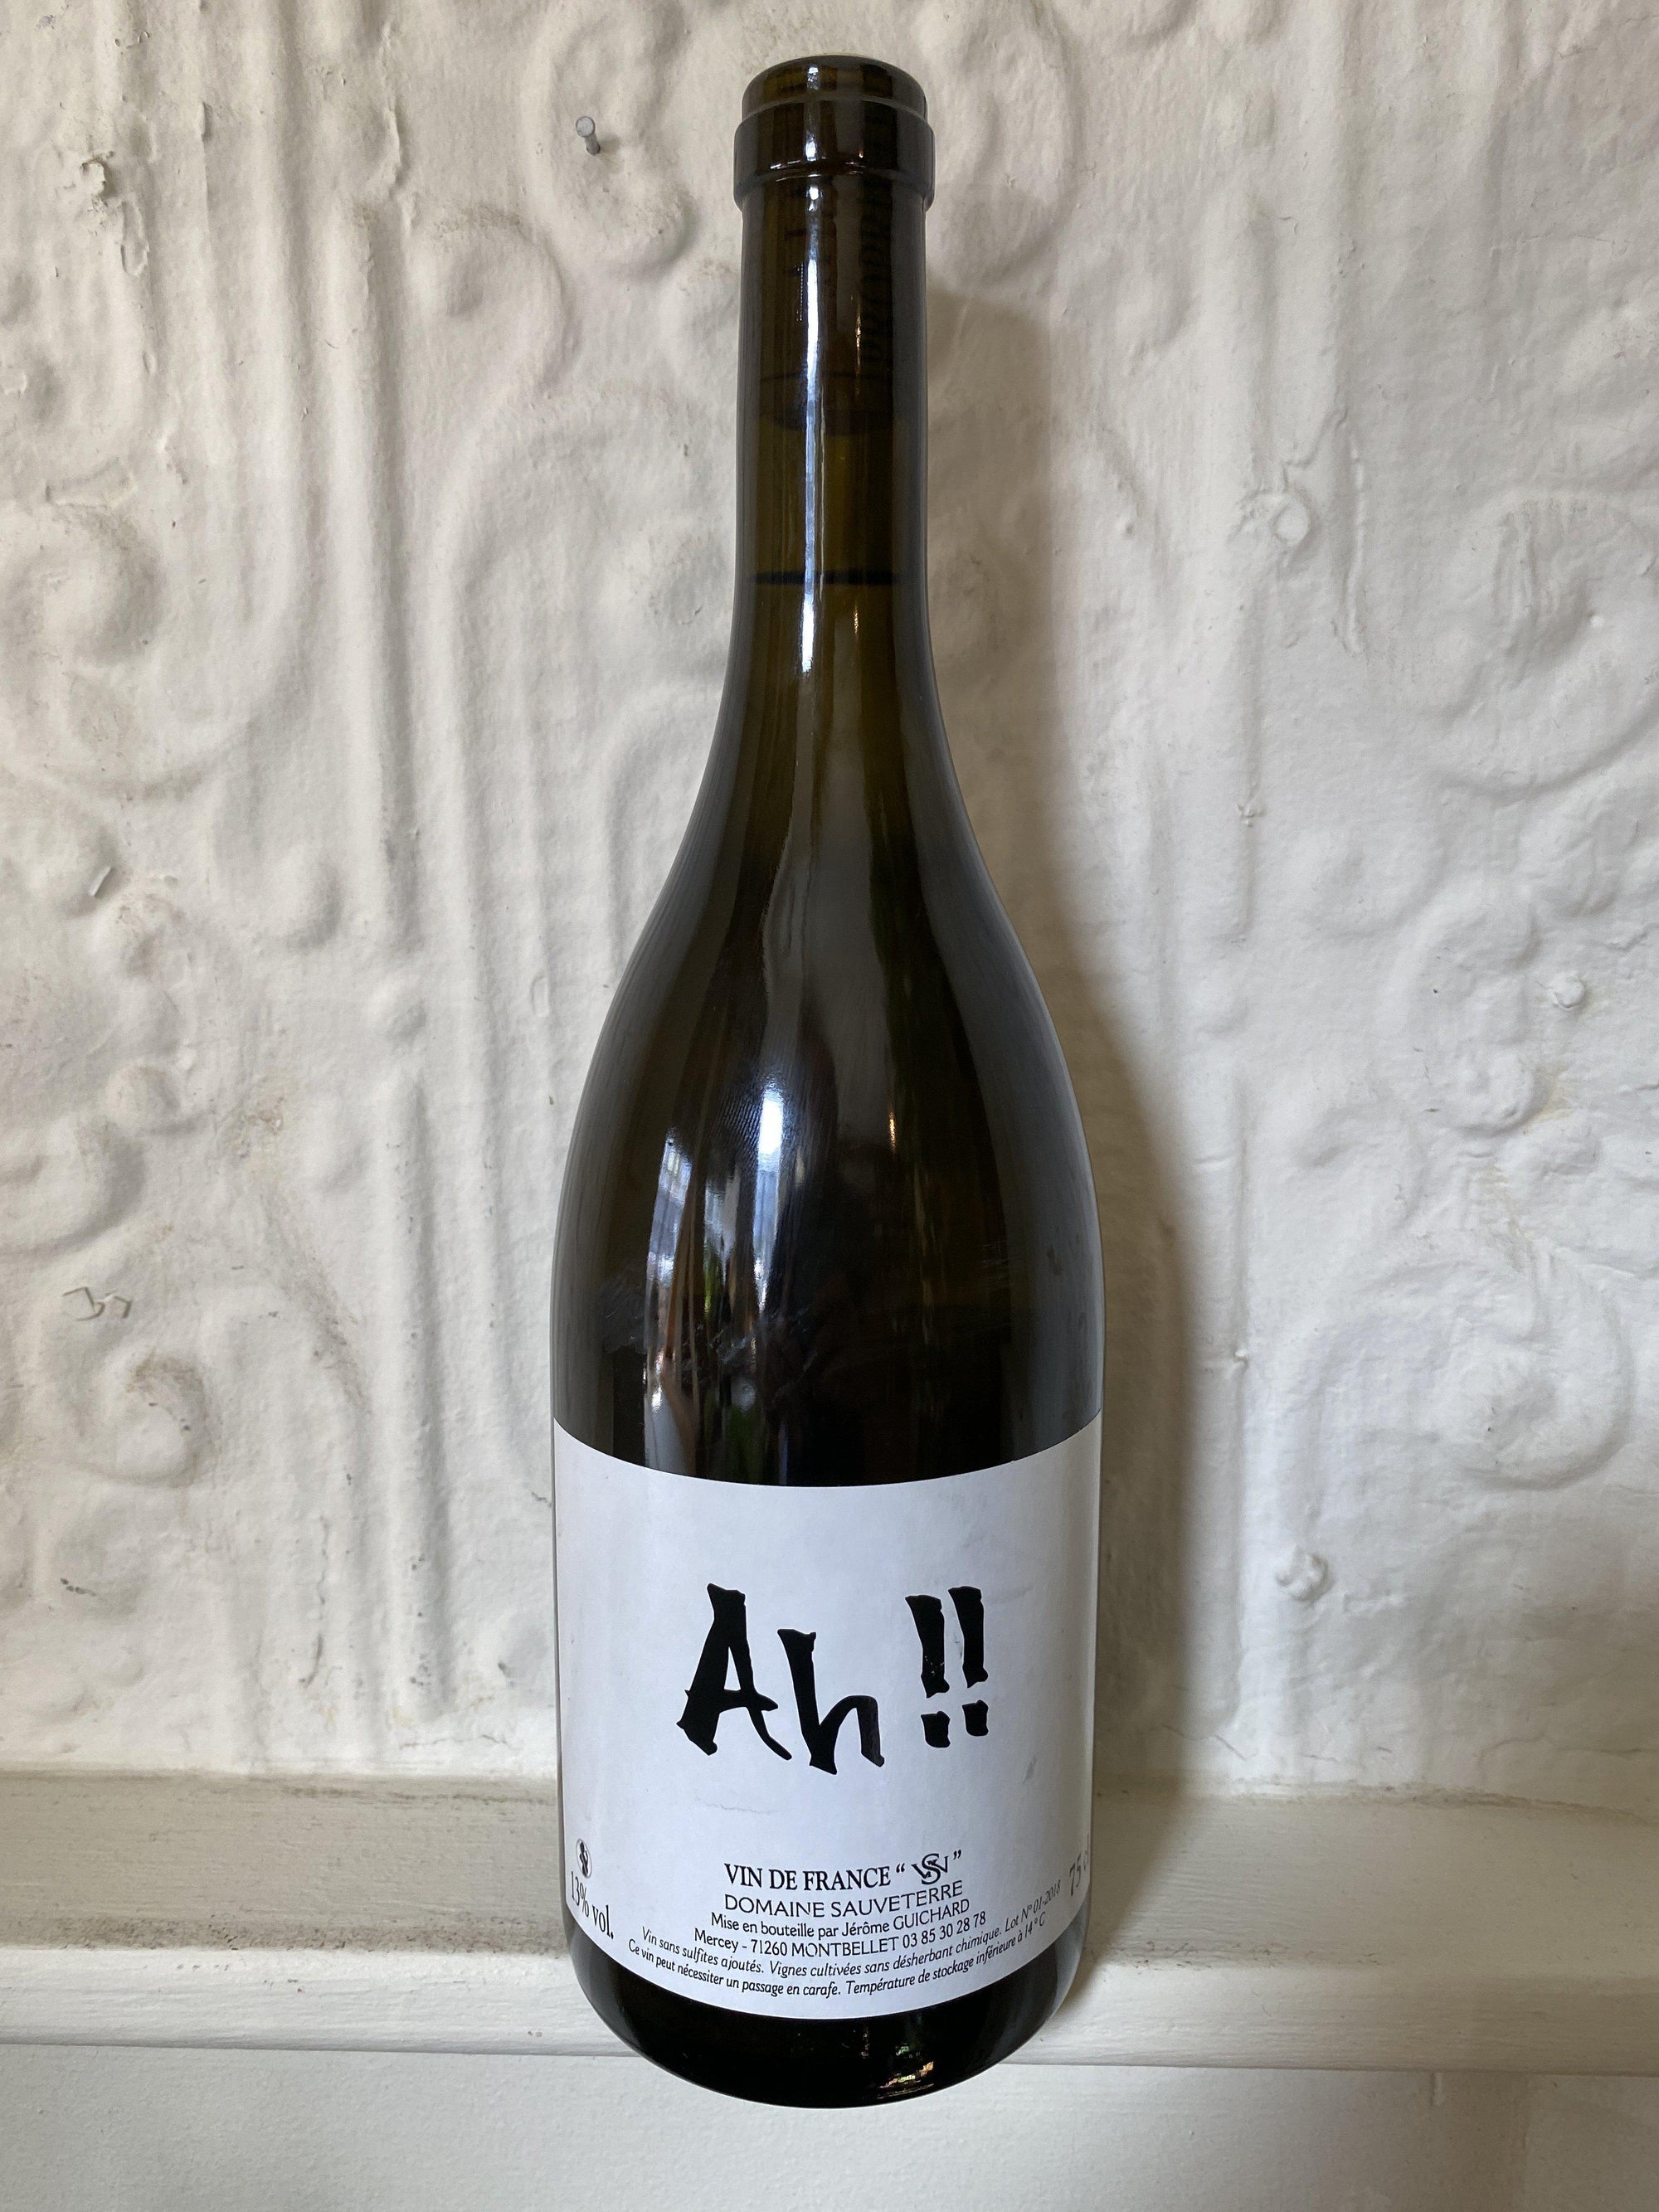 Ah!! Aligote, Domaine Suaveterre 2018 (Burgundy, France)-Wine-Bibber & Bell